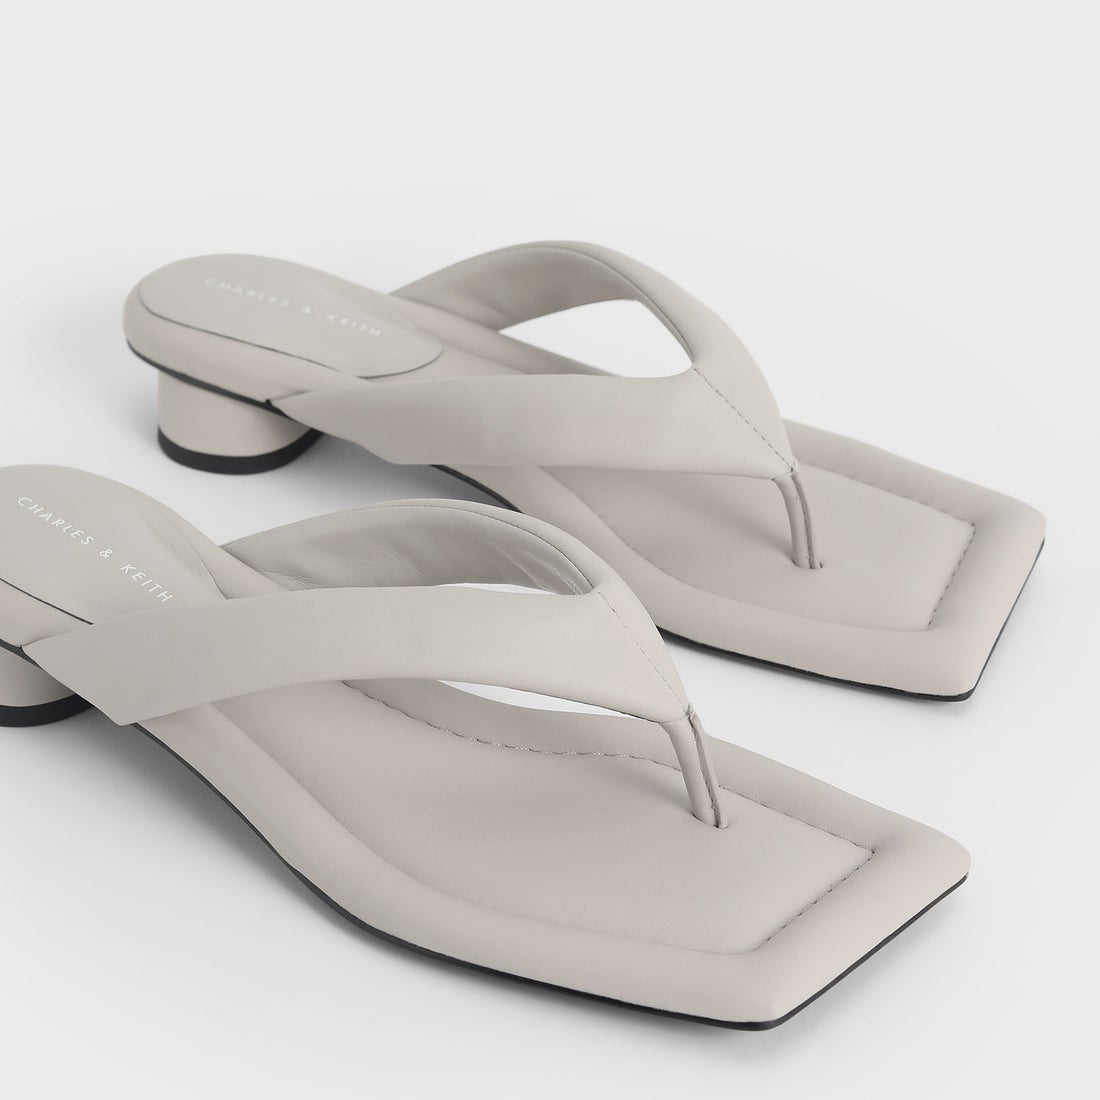 パデッド トングサンダル / Padded Thong Sandals （Grey）